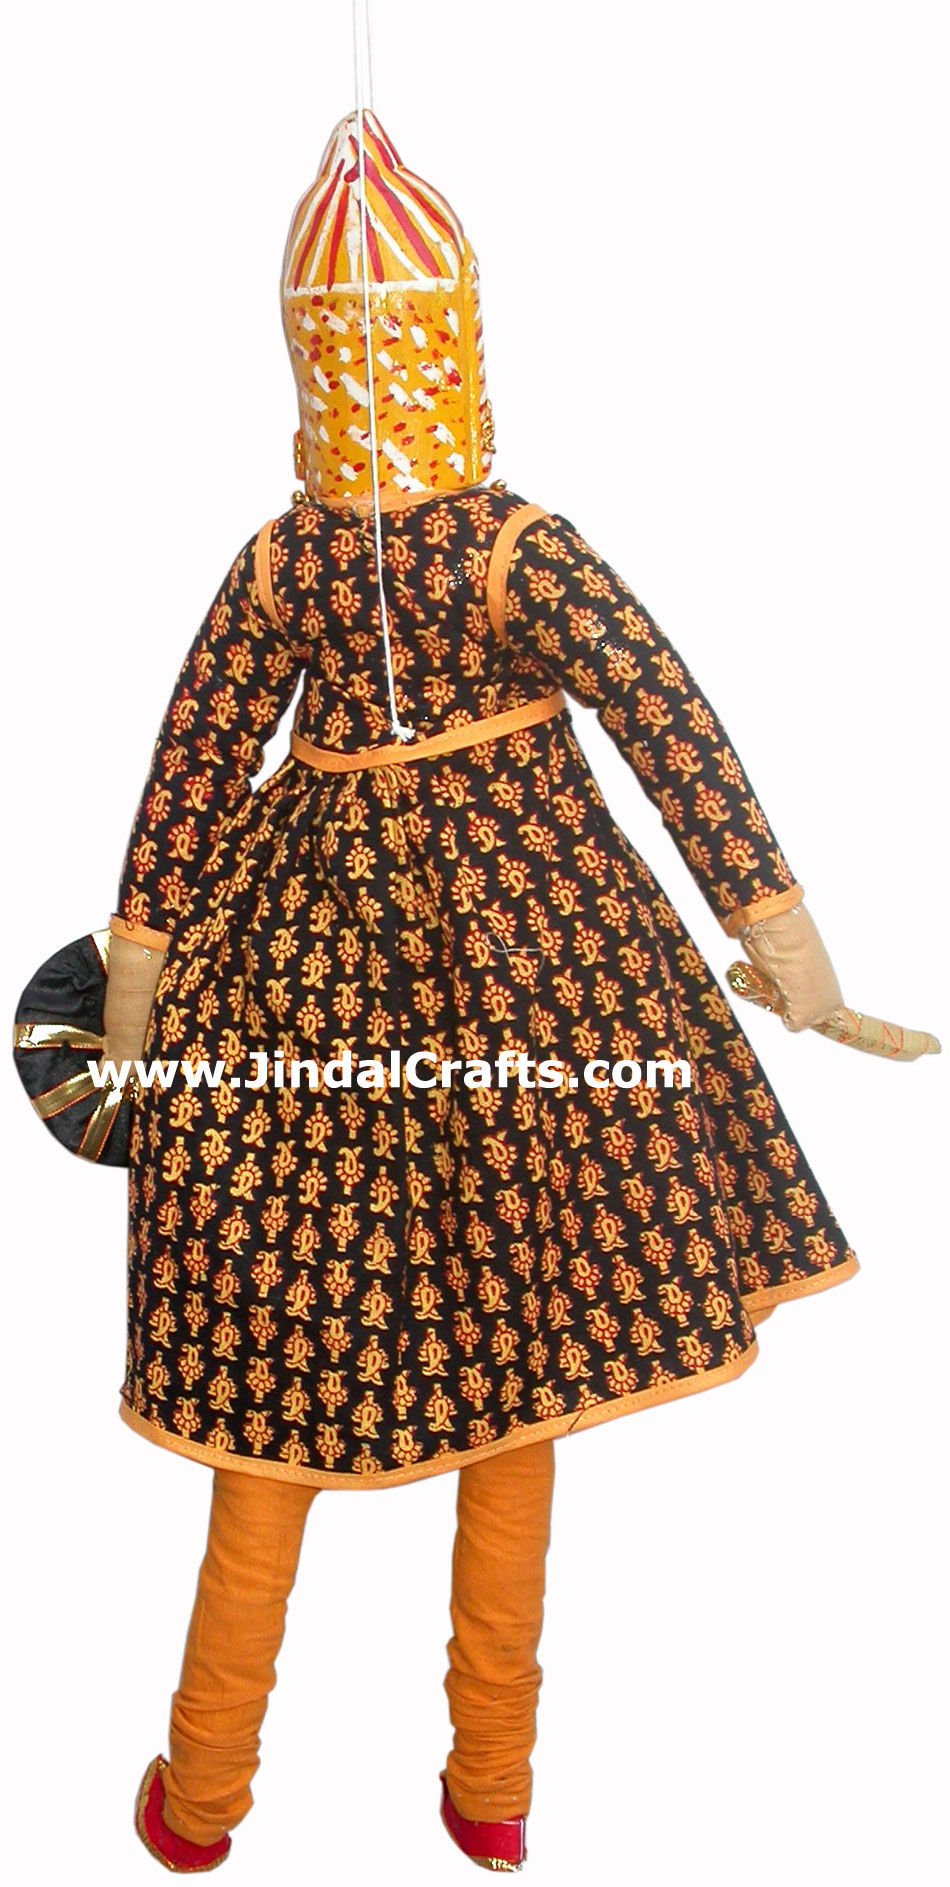 Puppet Doll Indian Art Craft Handicraft Traditional Figure